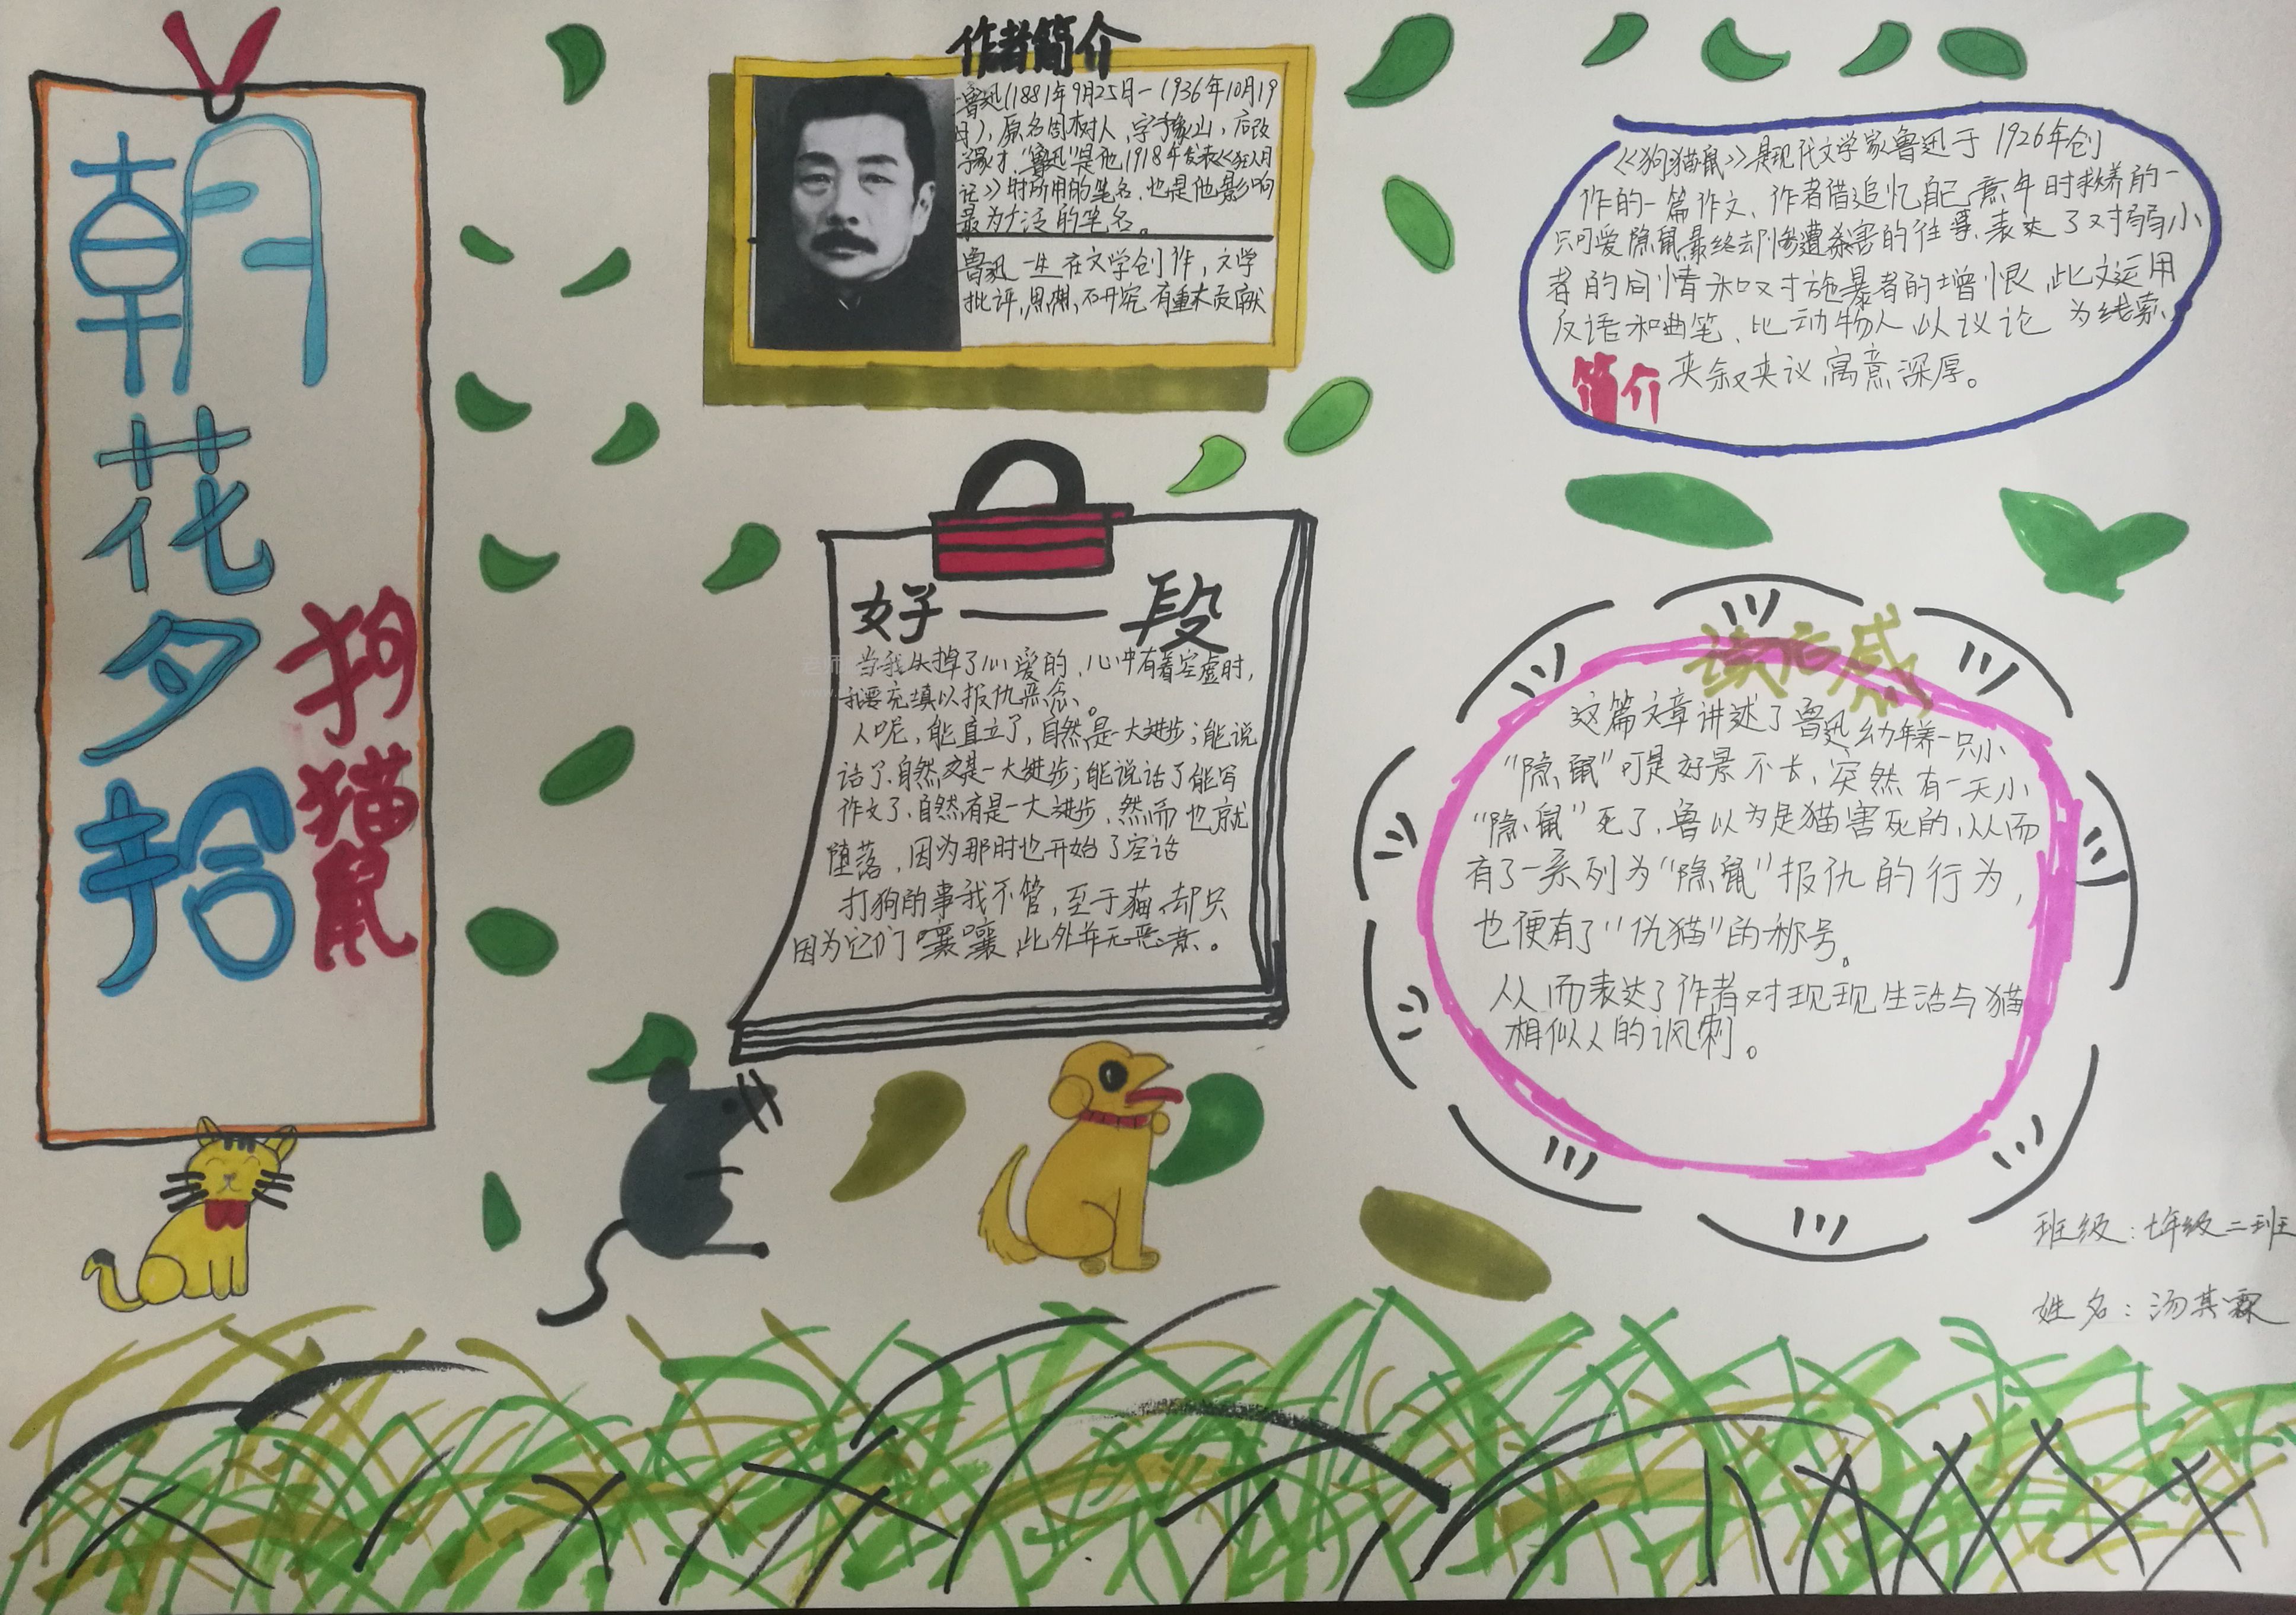 关于鲁迅的作品《朝花夕拾》中《猫 狗 鼠》手抄报图片